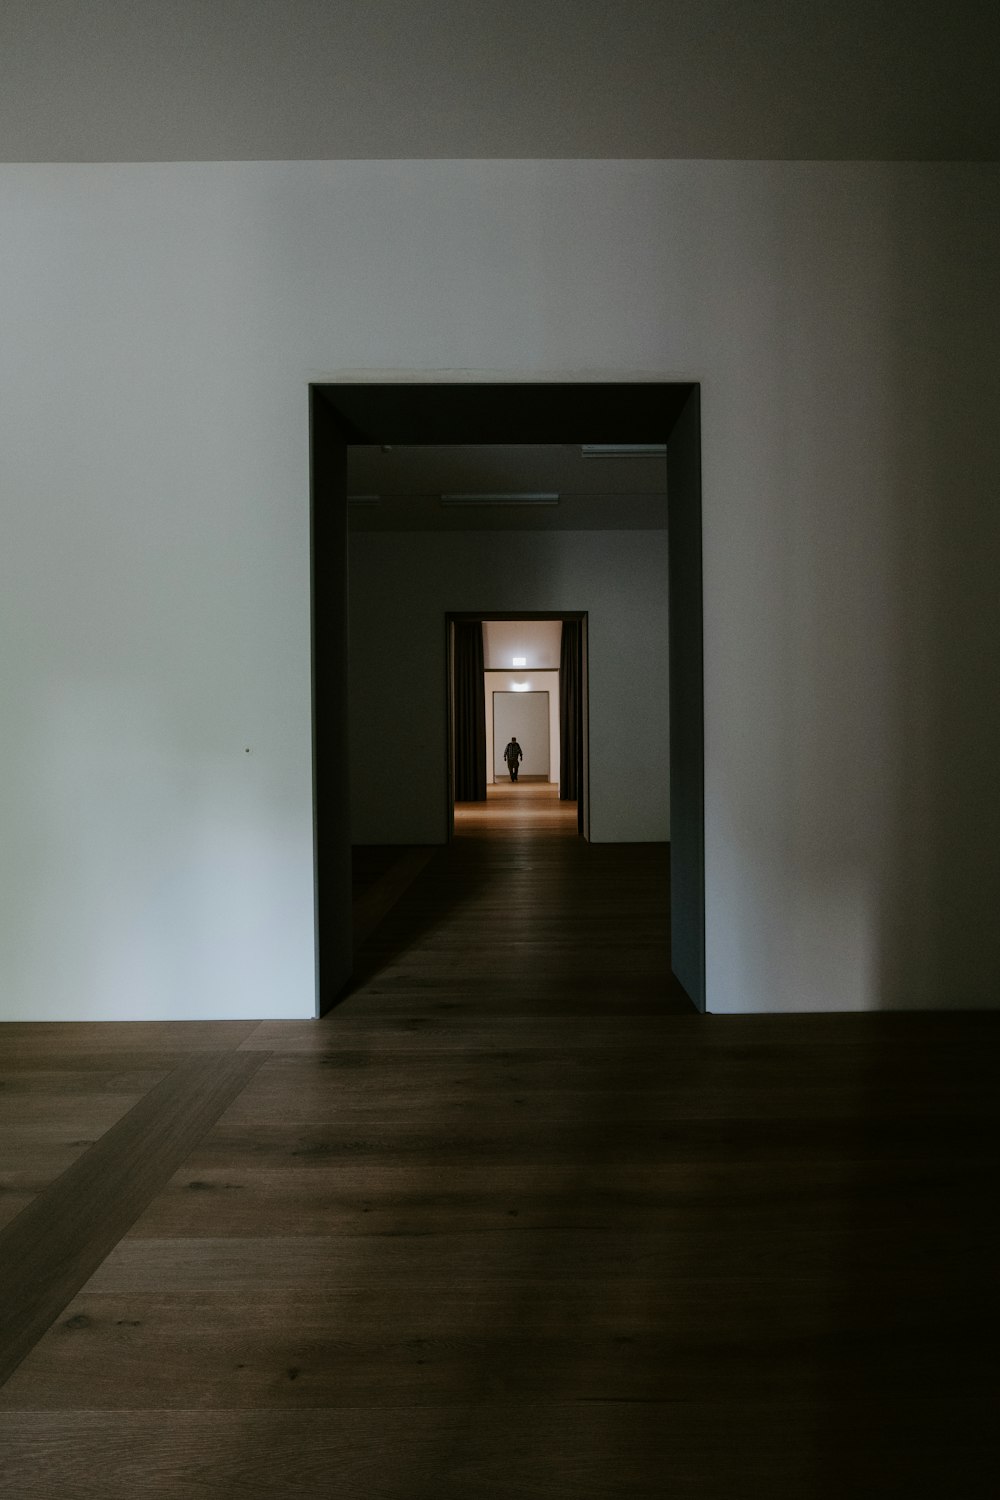 piso de madeira marrom com parede branca